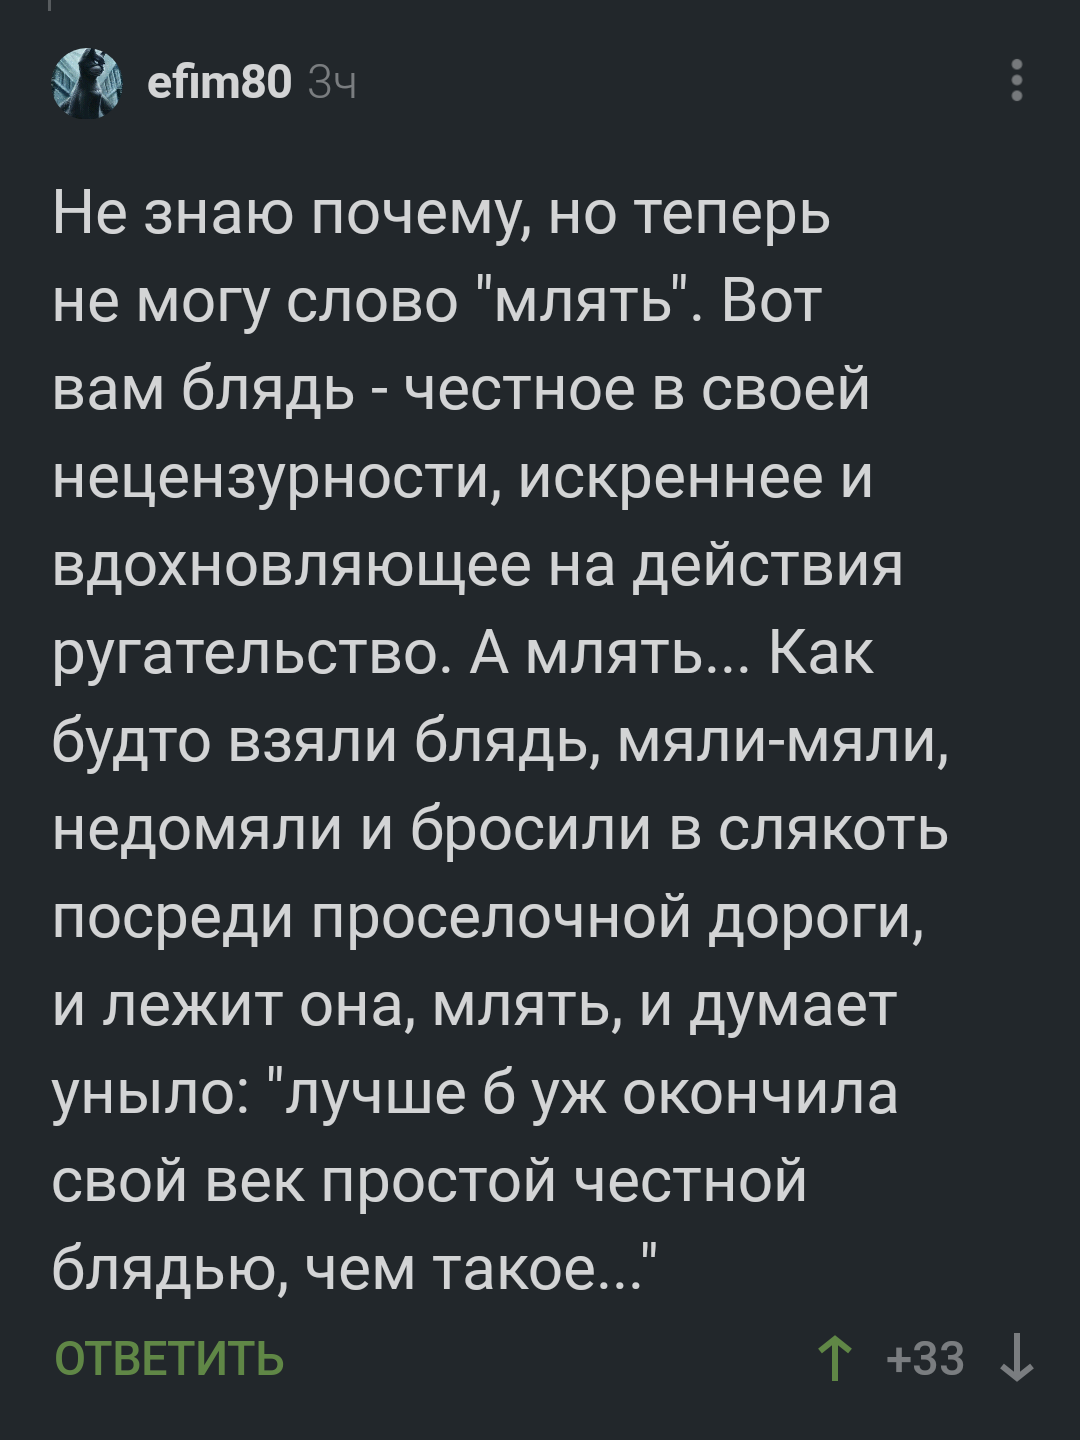 Русский мат. 18+ Почему нужно ругаться матом